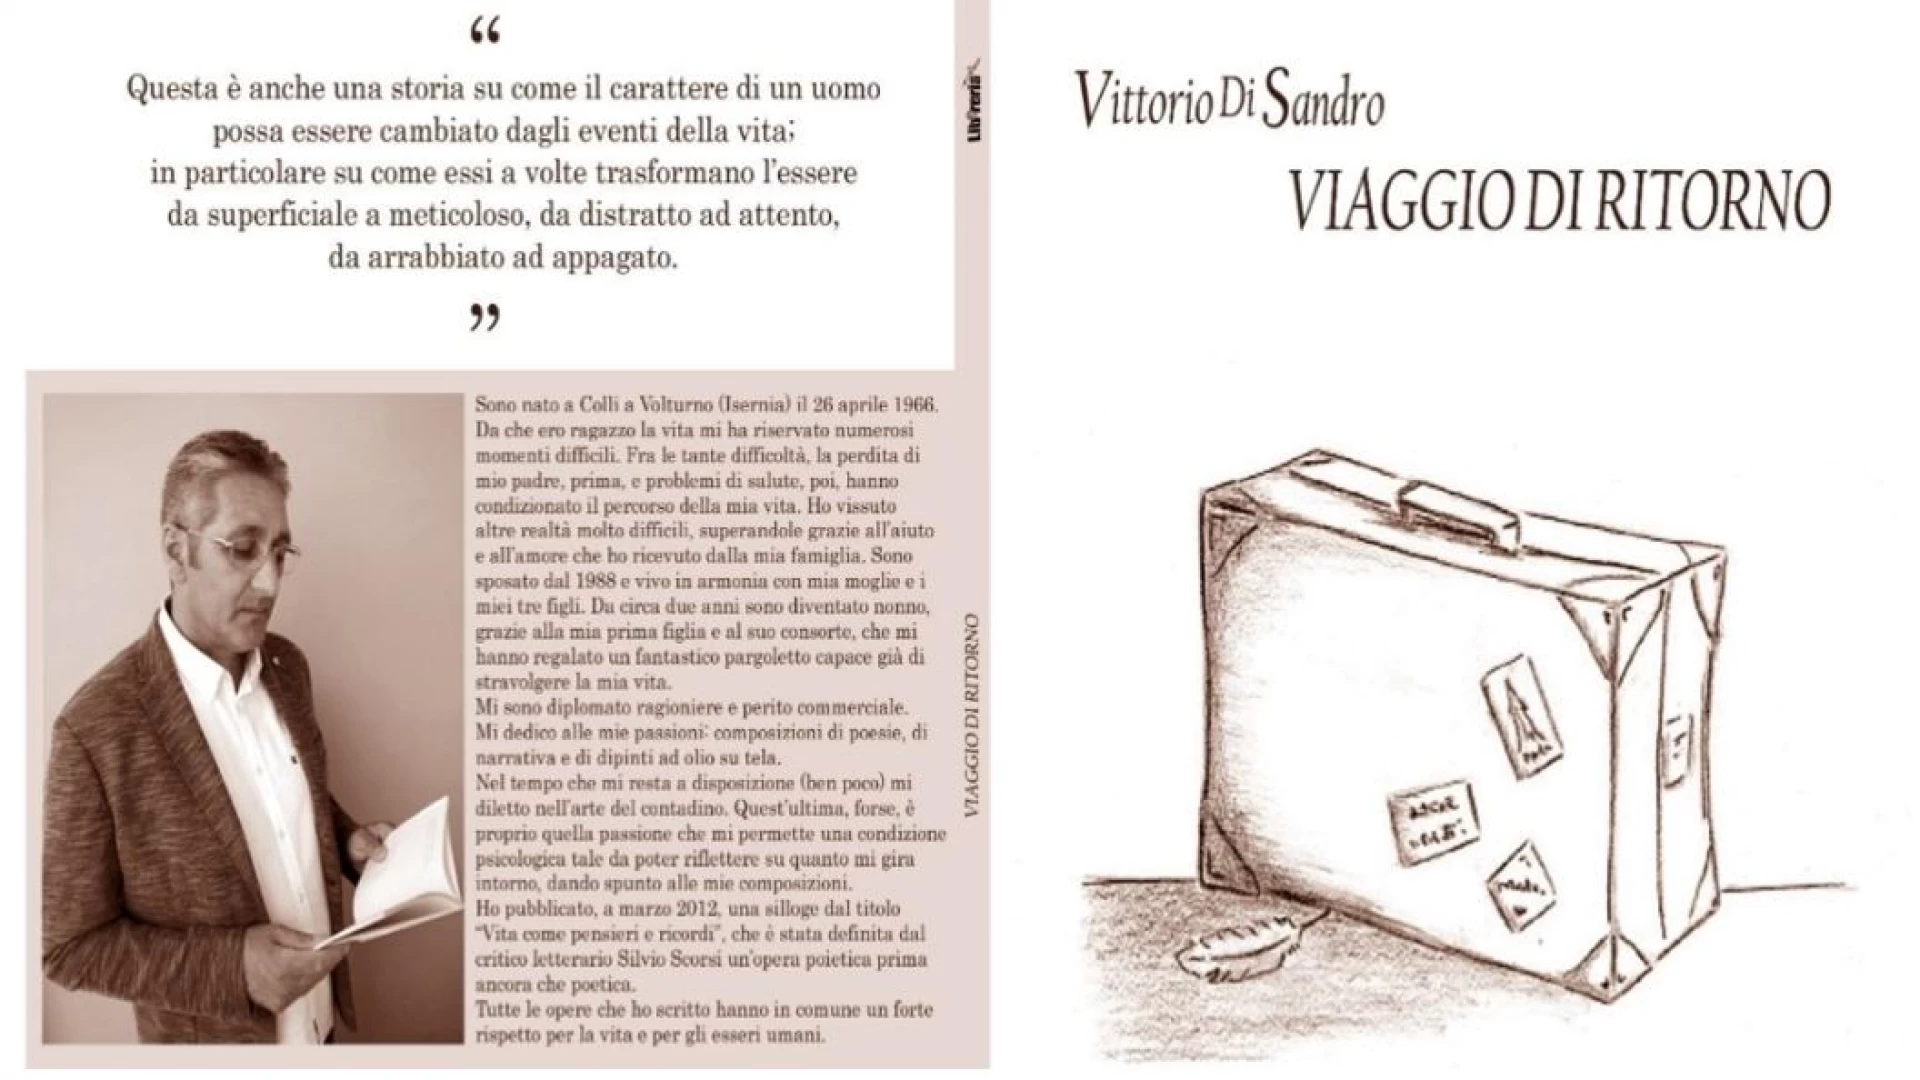 Viaggio di ritorno, il nuovo libro di Vittorio Di Sandro in vendita nelle edicole molisane. Una storia d vita emozionante.